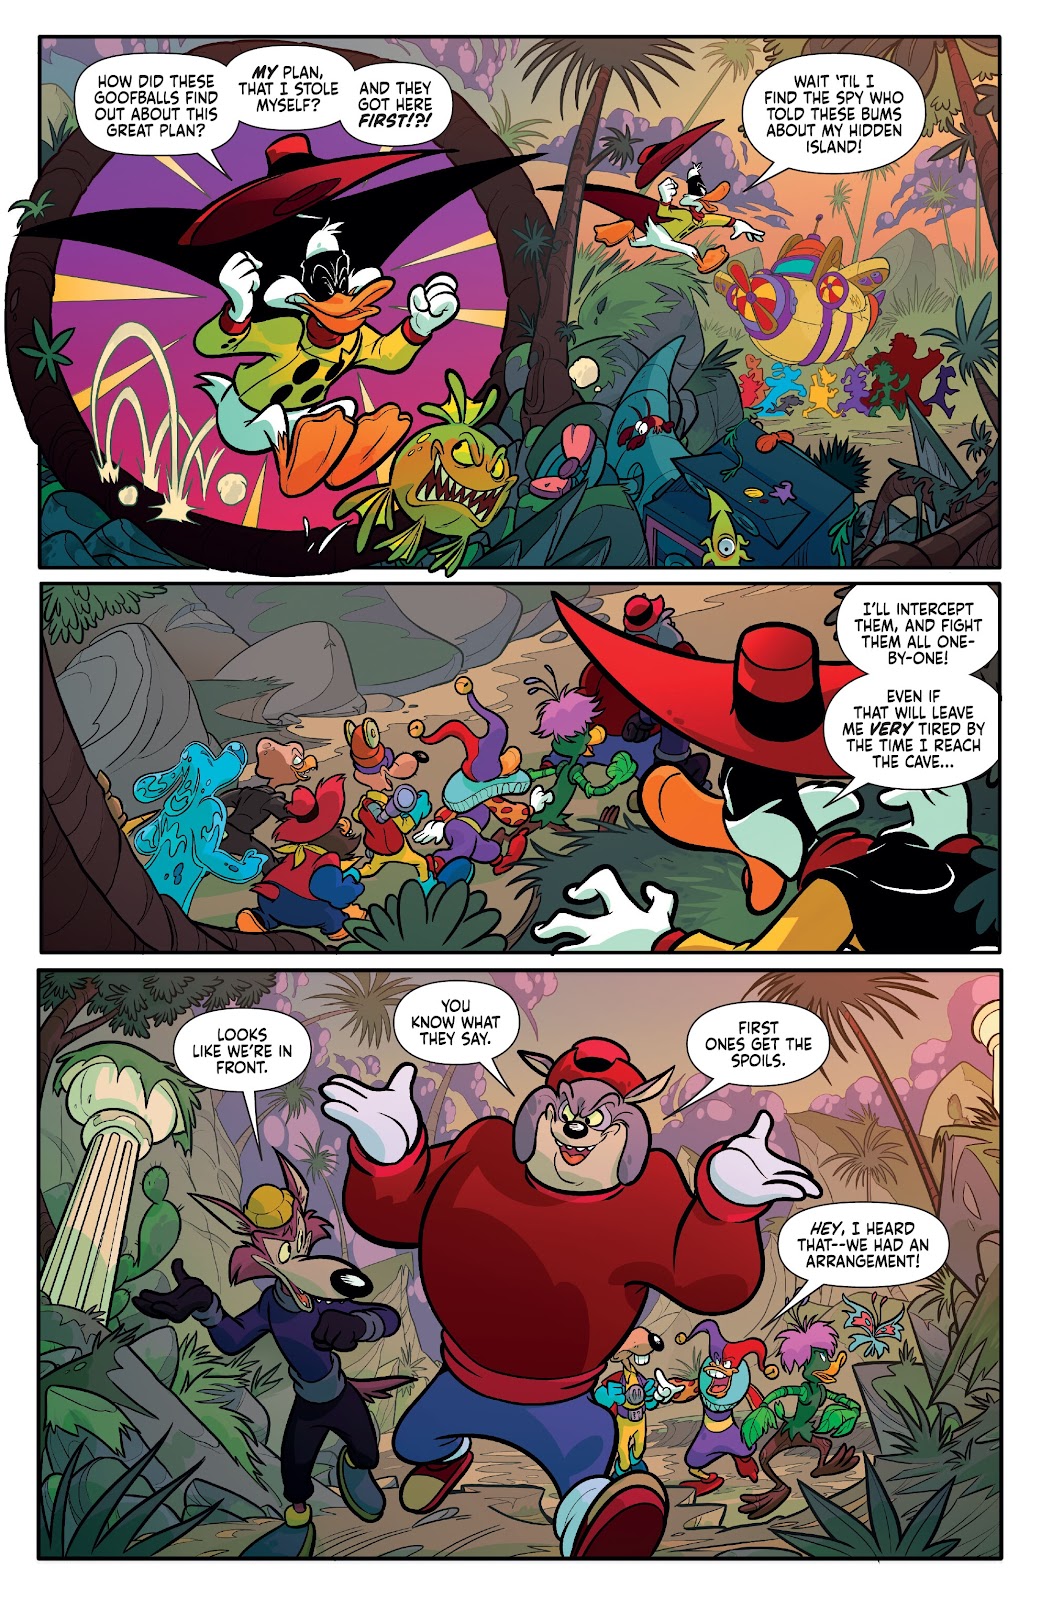 Darkwing Duck: Negaduck issue 3 - Page 13